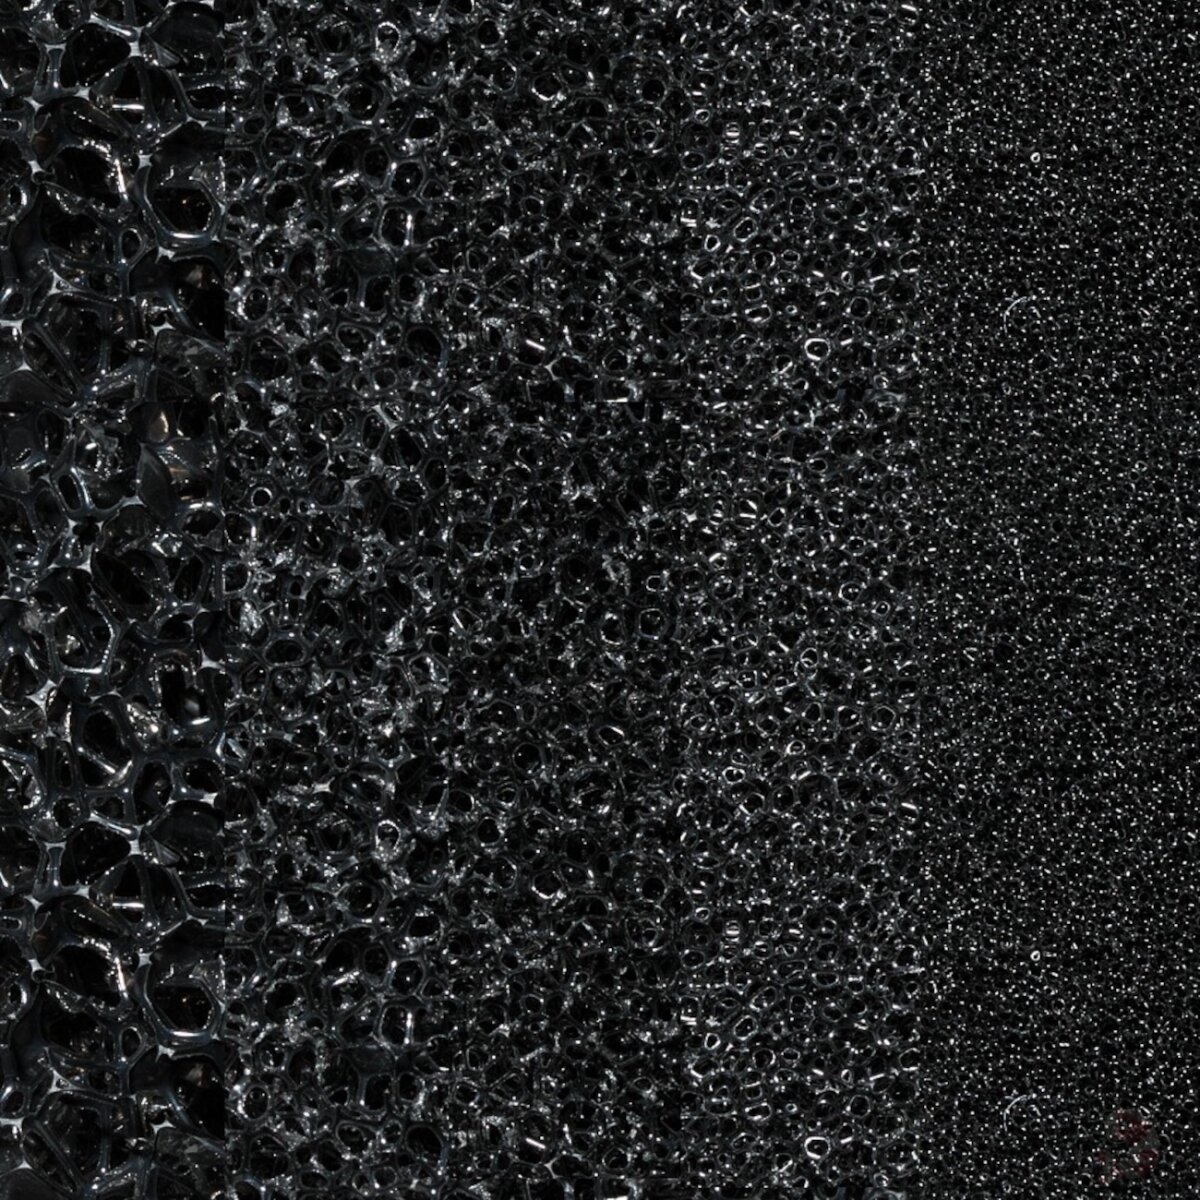 Filtermatte schwarz, 100 x 50 x 2 cm, 10 bis 60 ppi